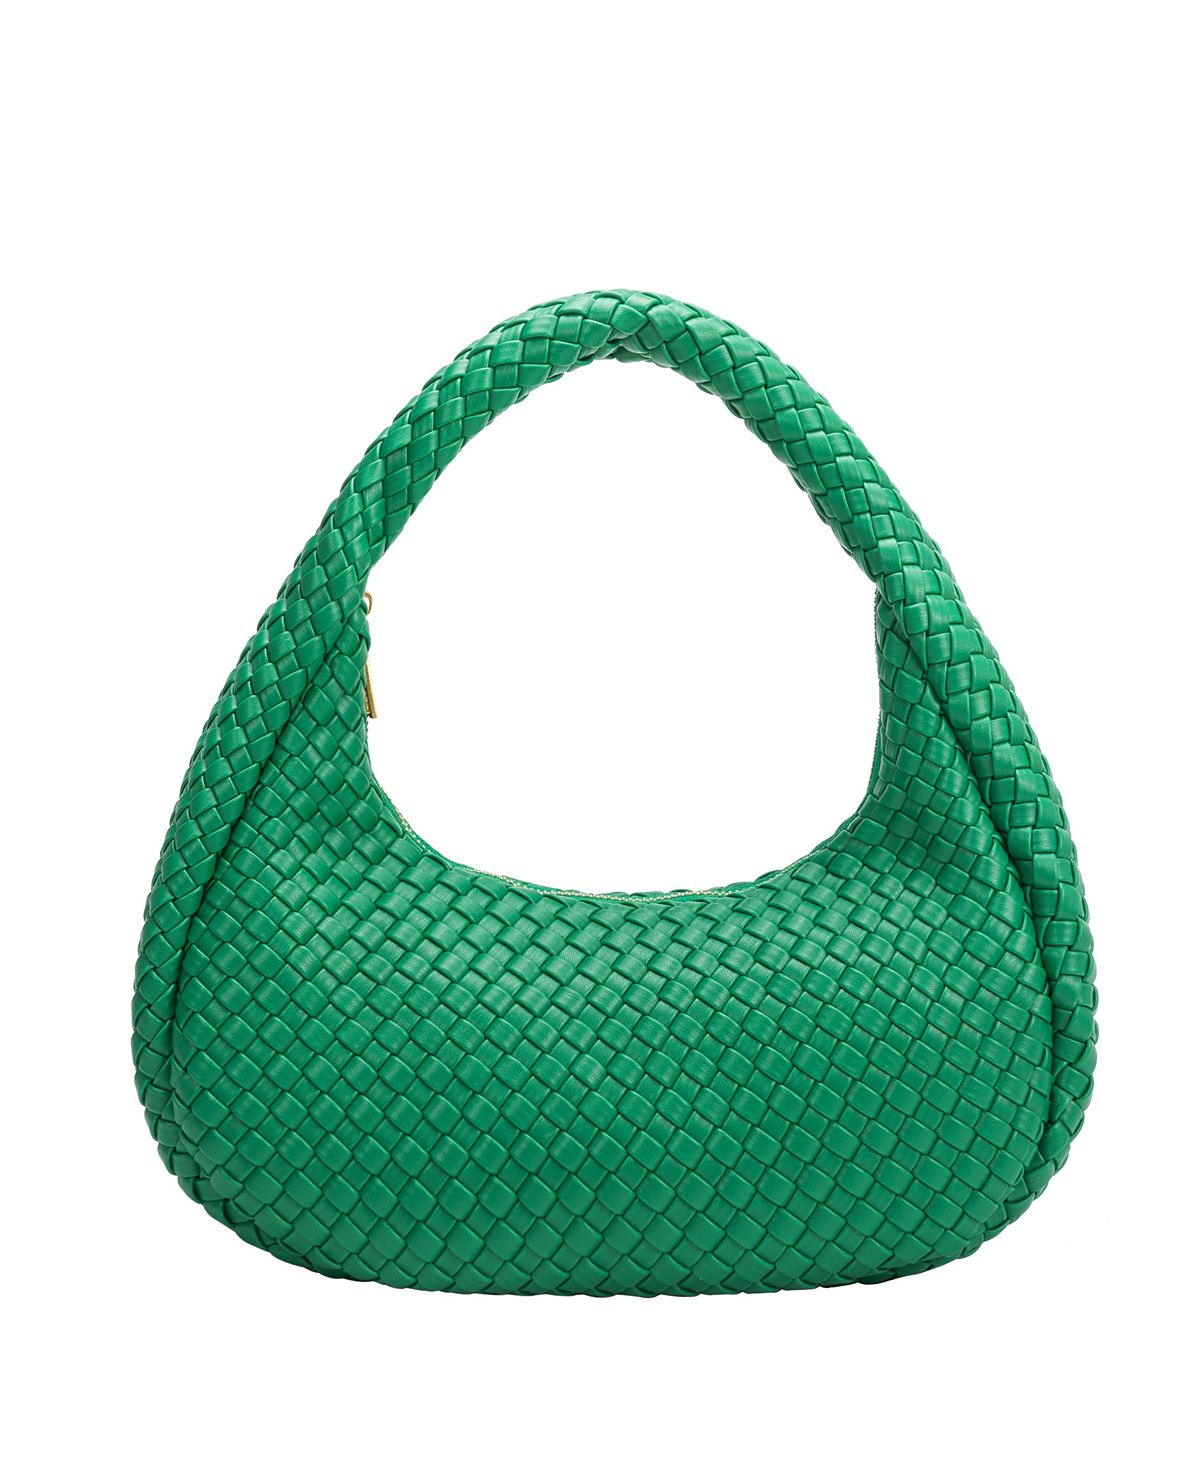 Женская сумка через плечо Lorelai Melie Bianco, зеленый женская большая сумка sylvie melie bianco черный